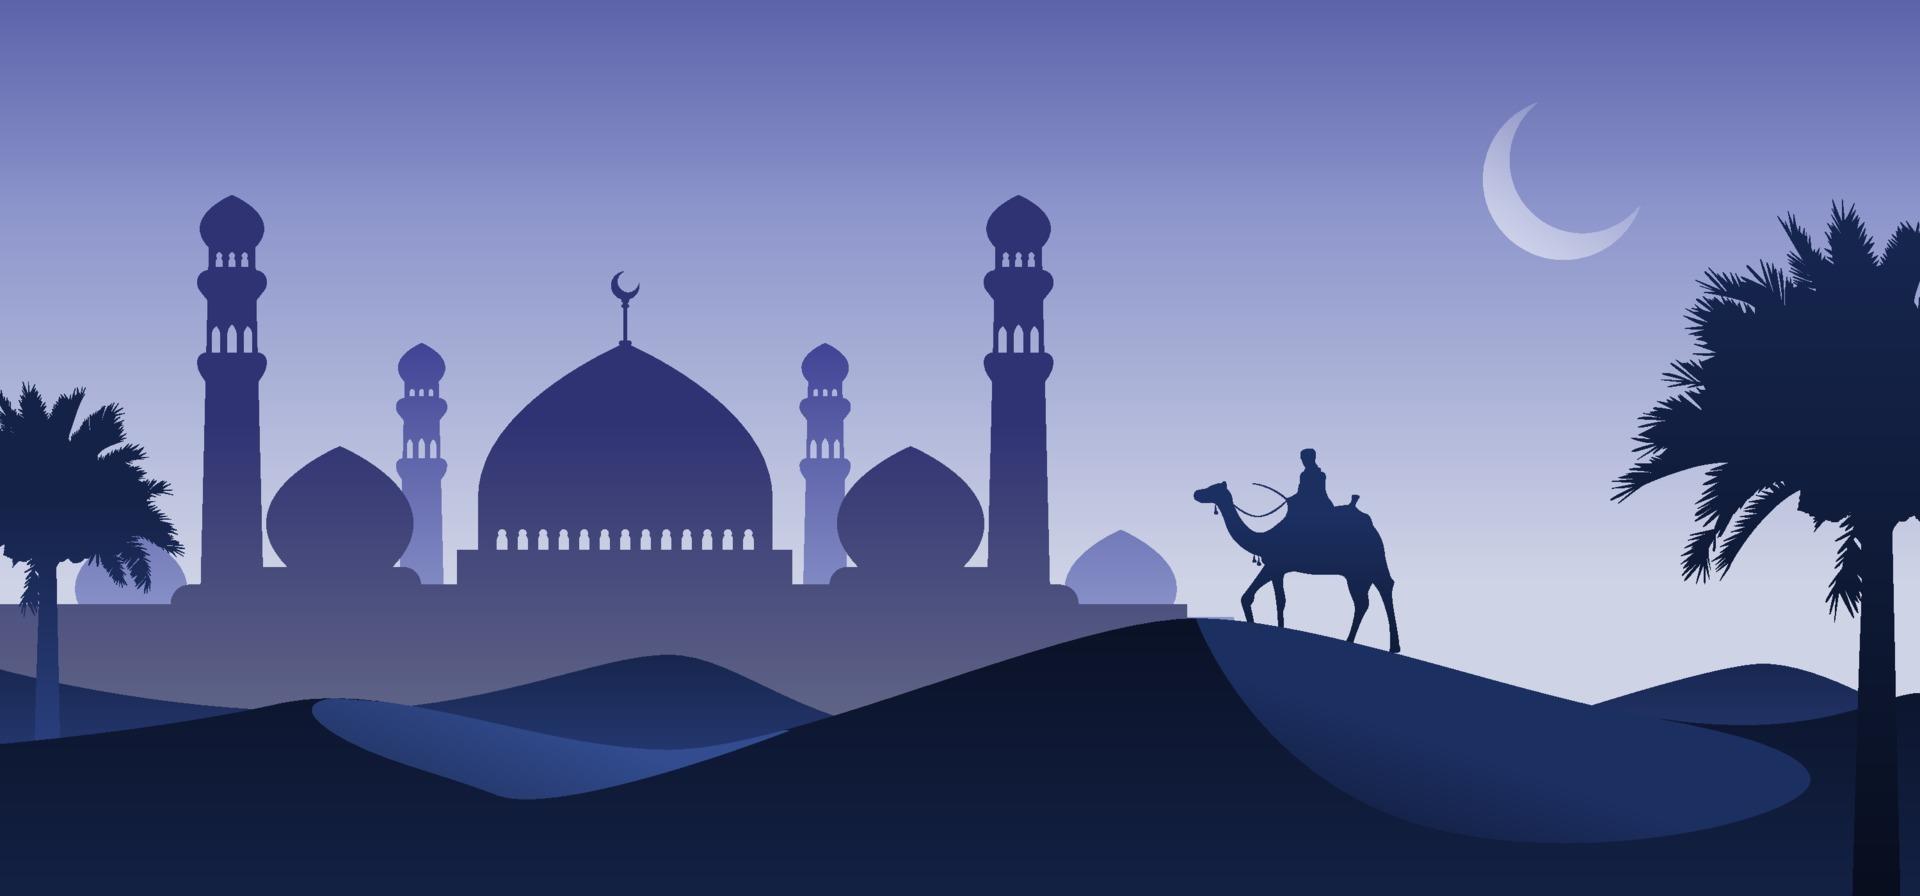 man rider kamel i ökennatten med moské och halvmåne bakgrund, arabia ökenlandskap nattvy, silhuett vektorillustration, islam eller ramadankoncept vektor